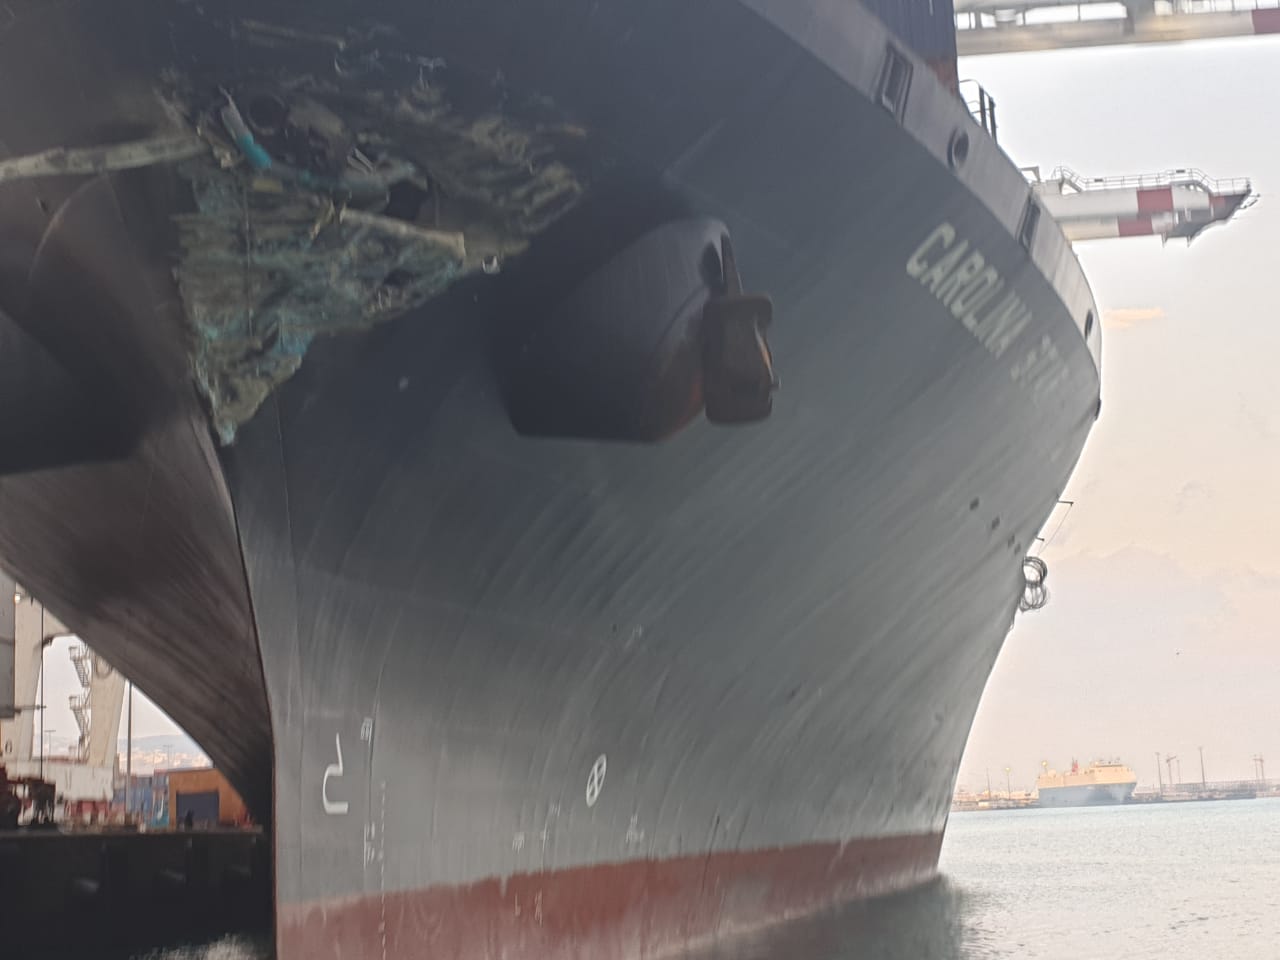 Le navire porte-conteneur Carolina Star endommagé au niveau de sa proue